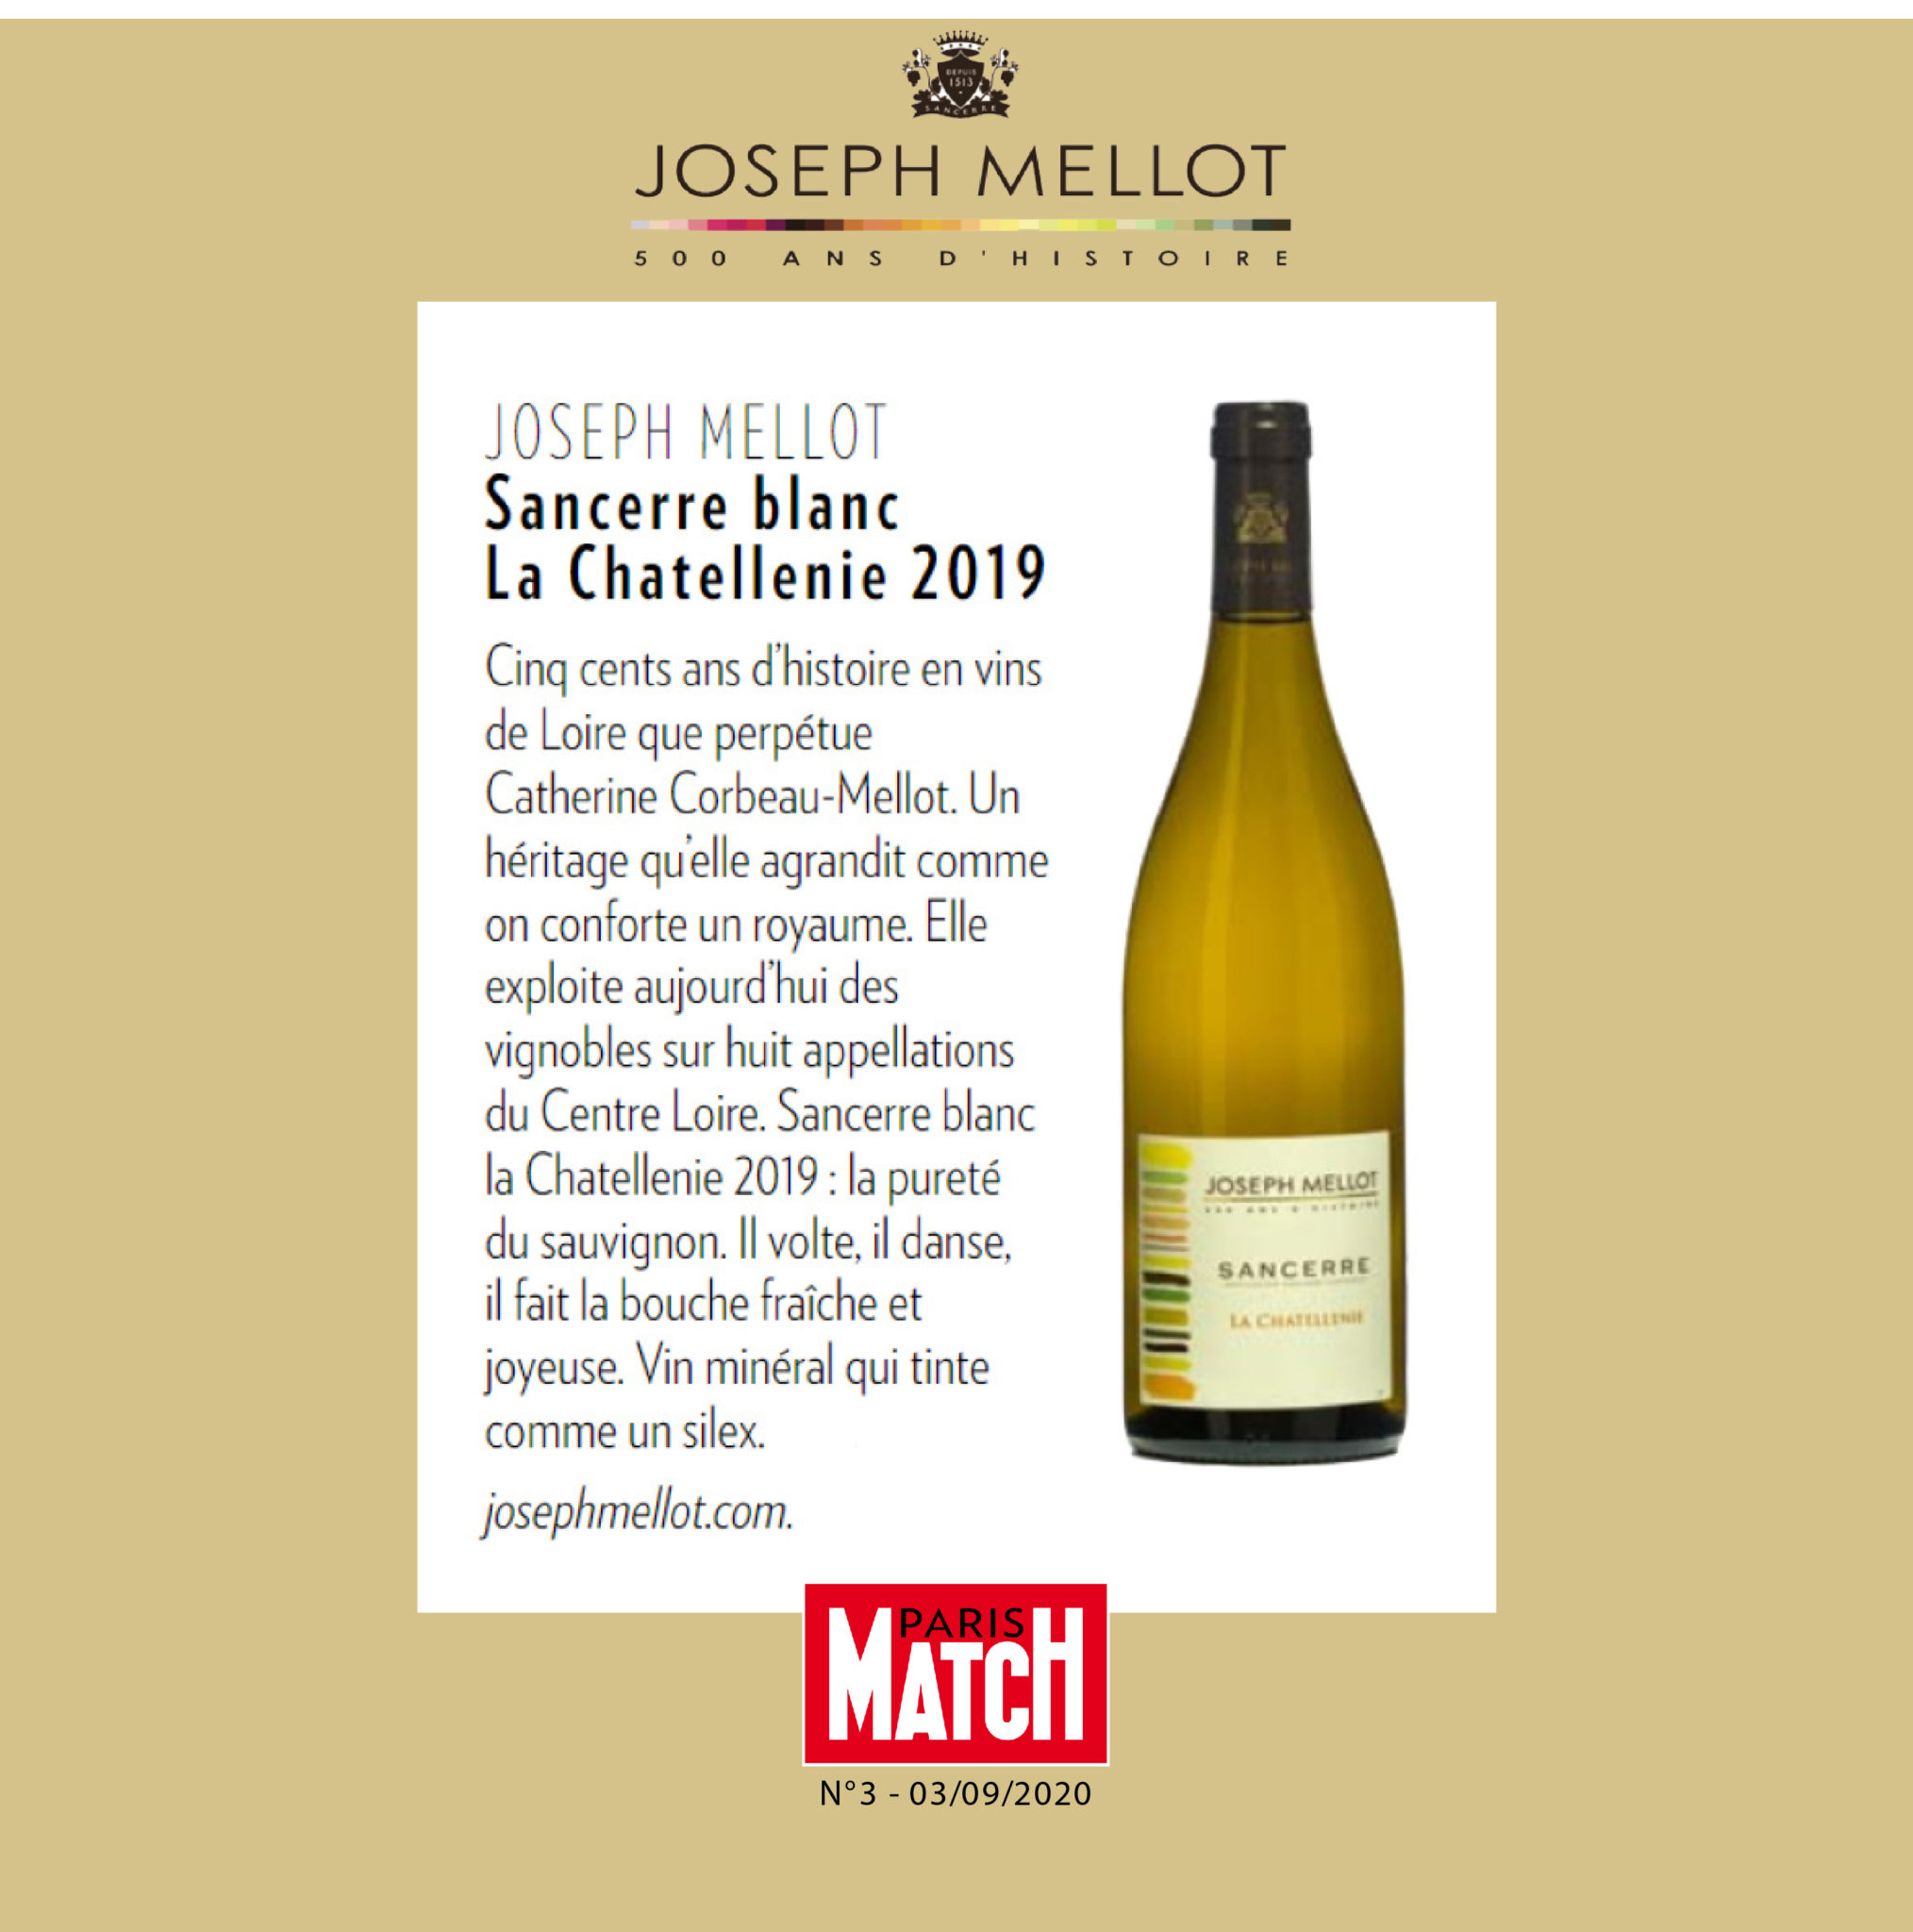 La Chatellenie 2019 – Paris Match